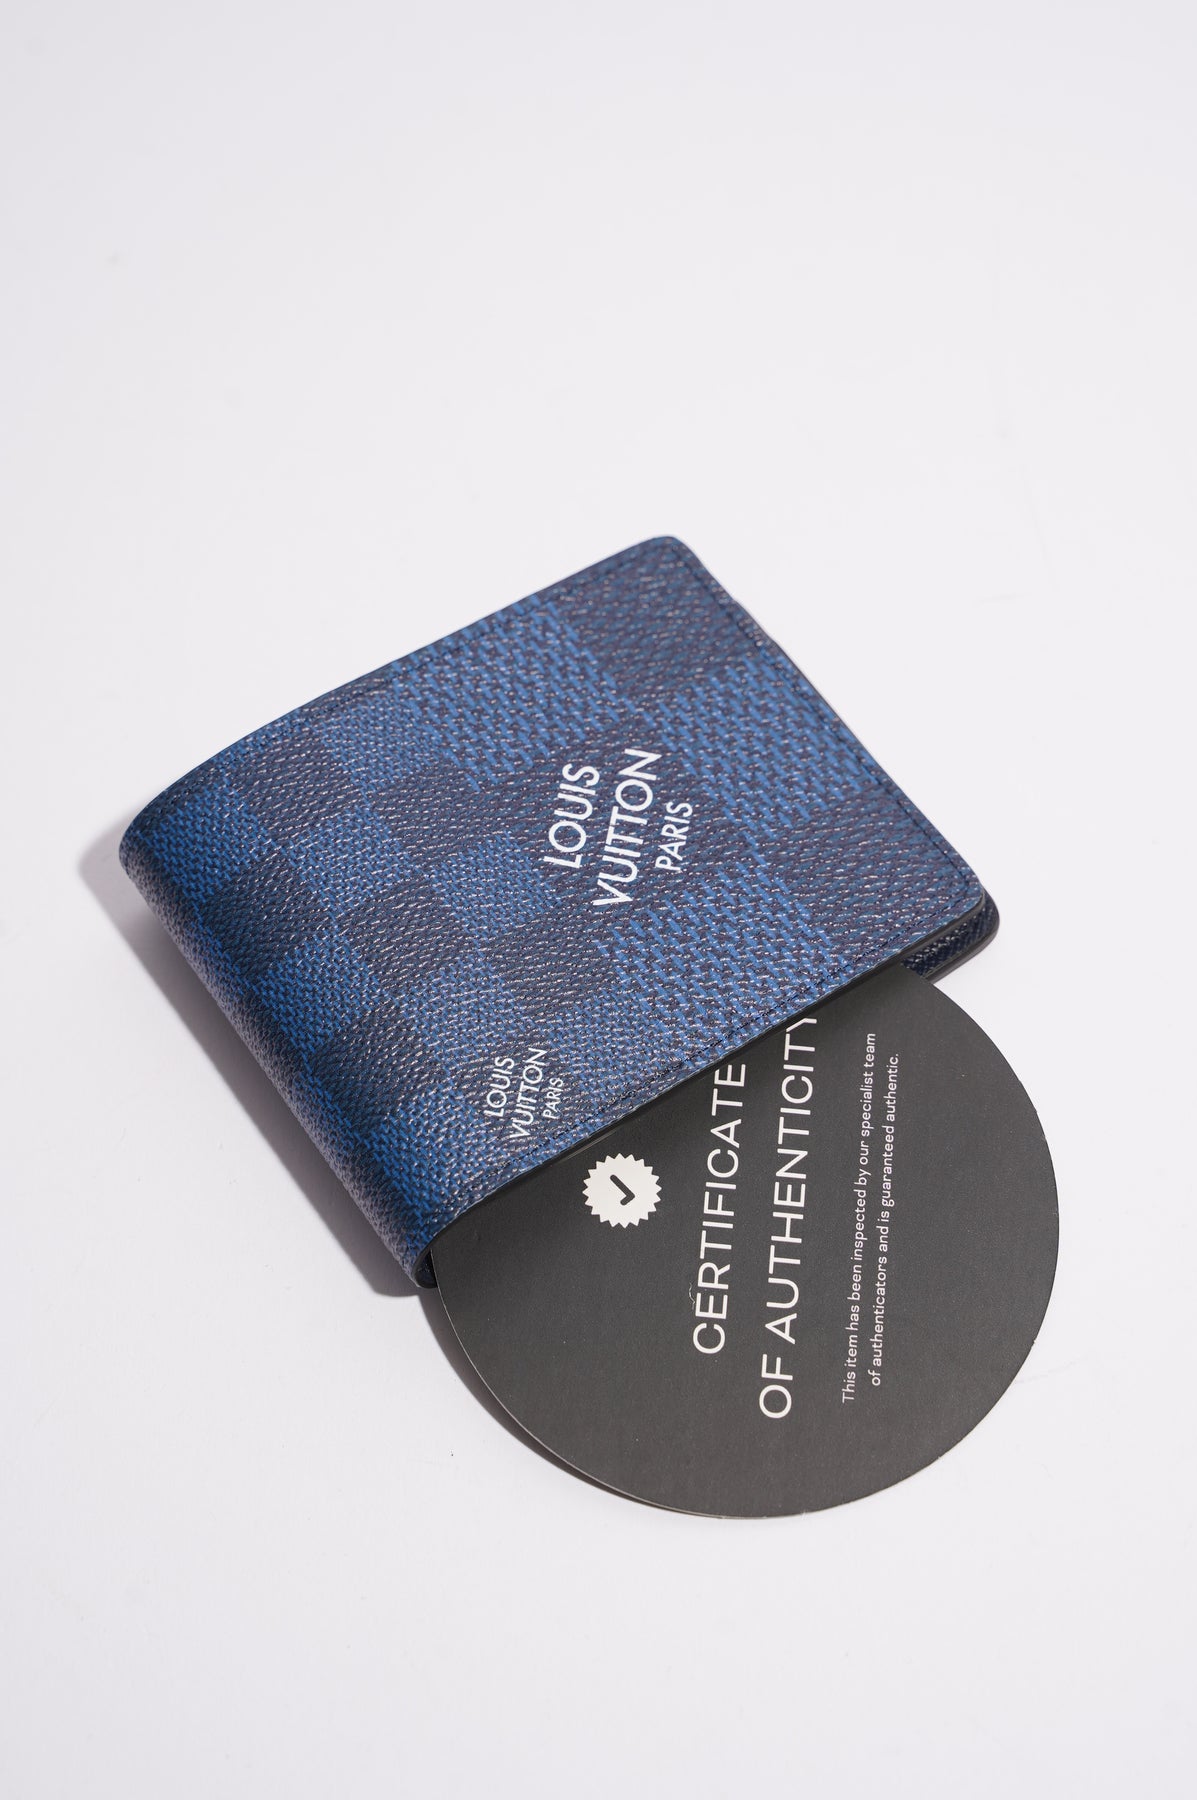 Louis Vuitton Taigarama Multiple Wallet Men M30299 Cobalt Navy Blue -  $65.00 